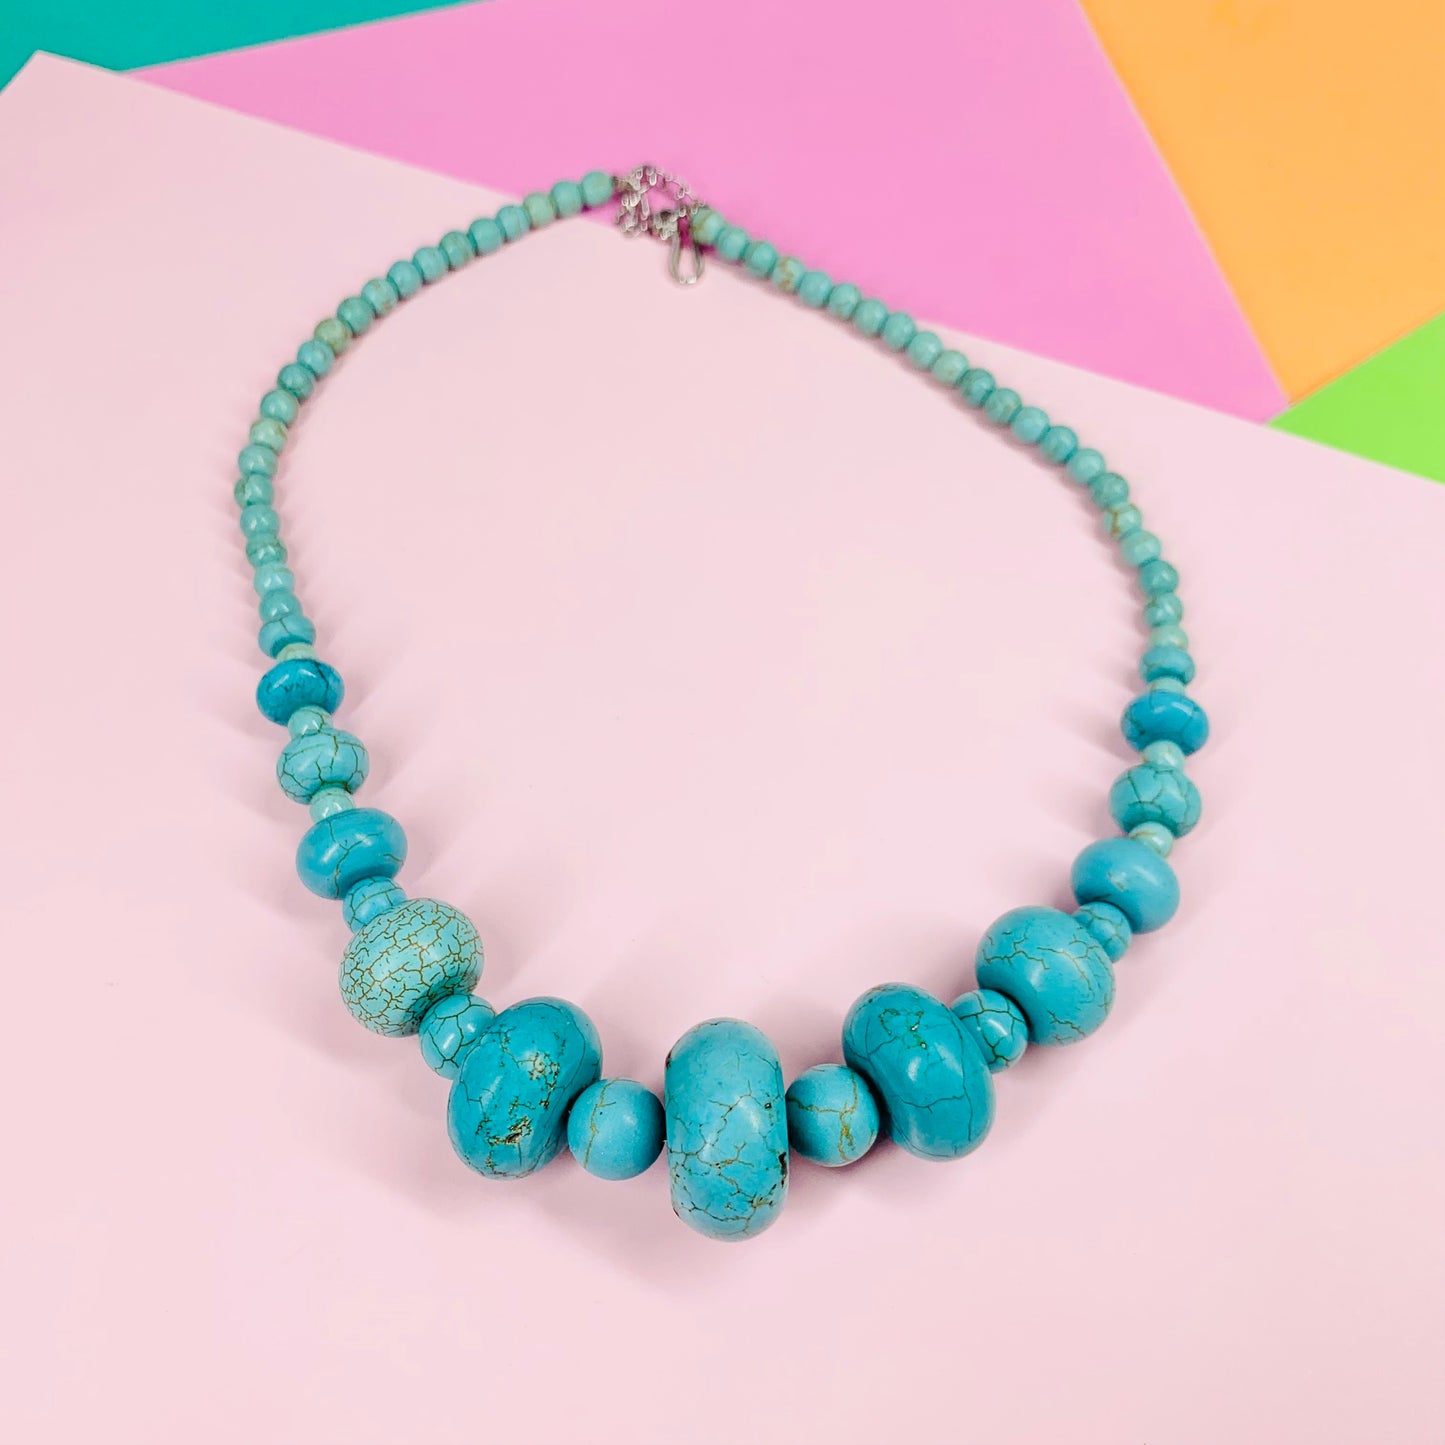 1980s imitation turquoise beads necklace